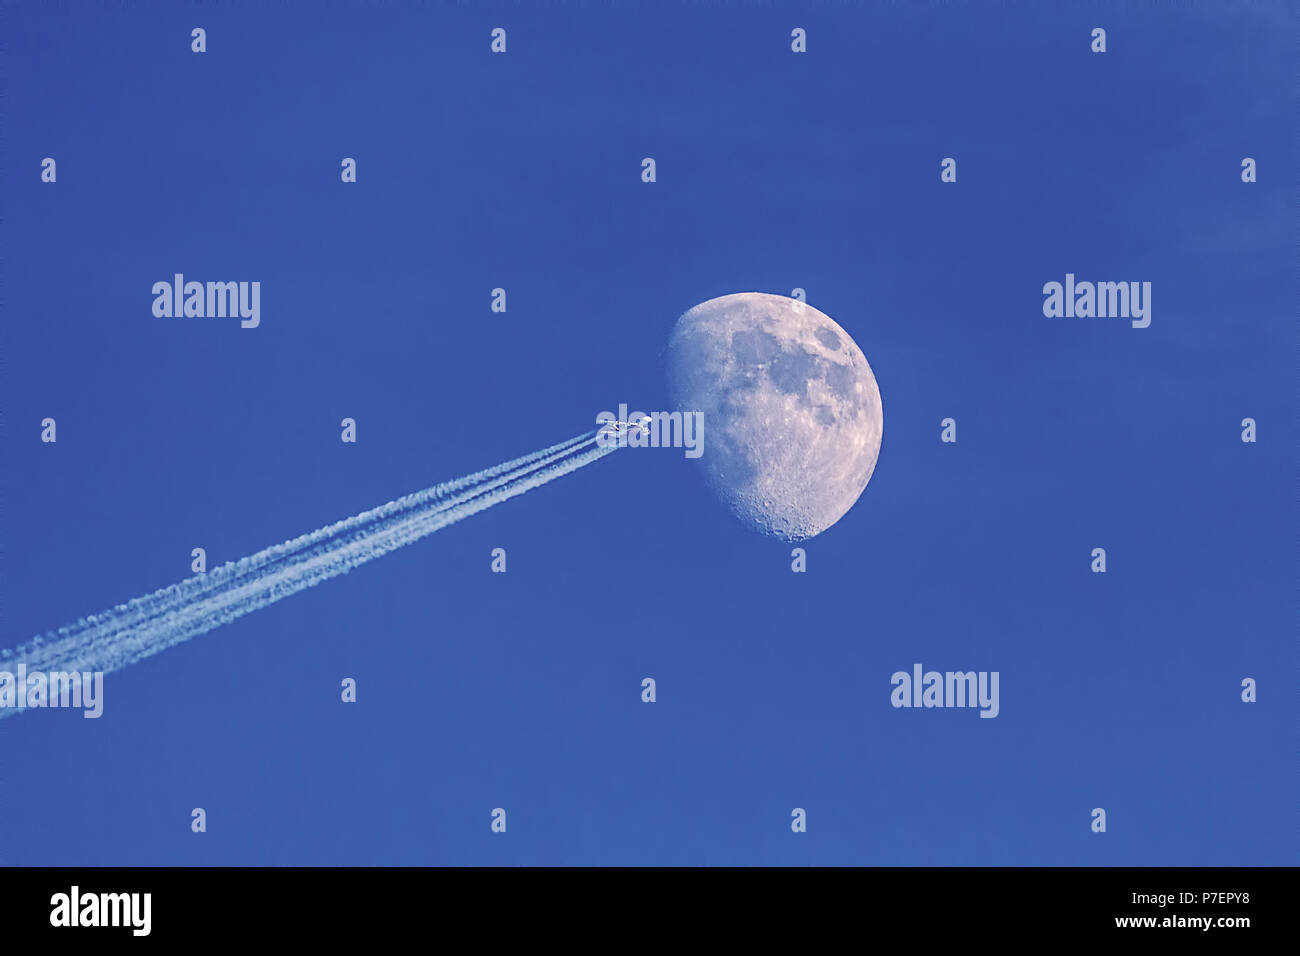 Avión moderno con la luna en el cielo azul como fondo, haciendo la ilusión de vuelo del transbordador espacial a la luna. Foto de stock